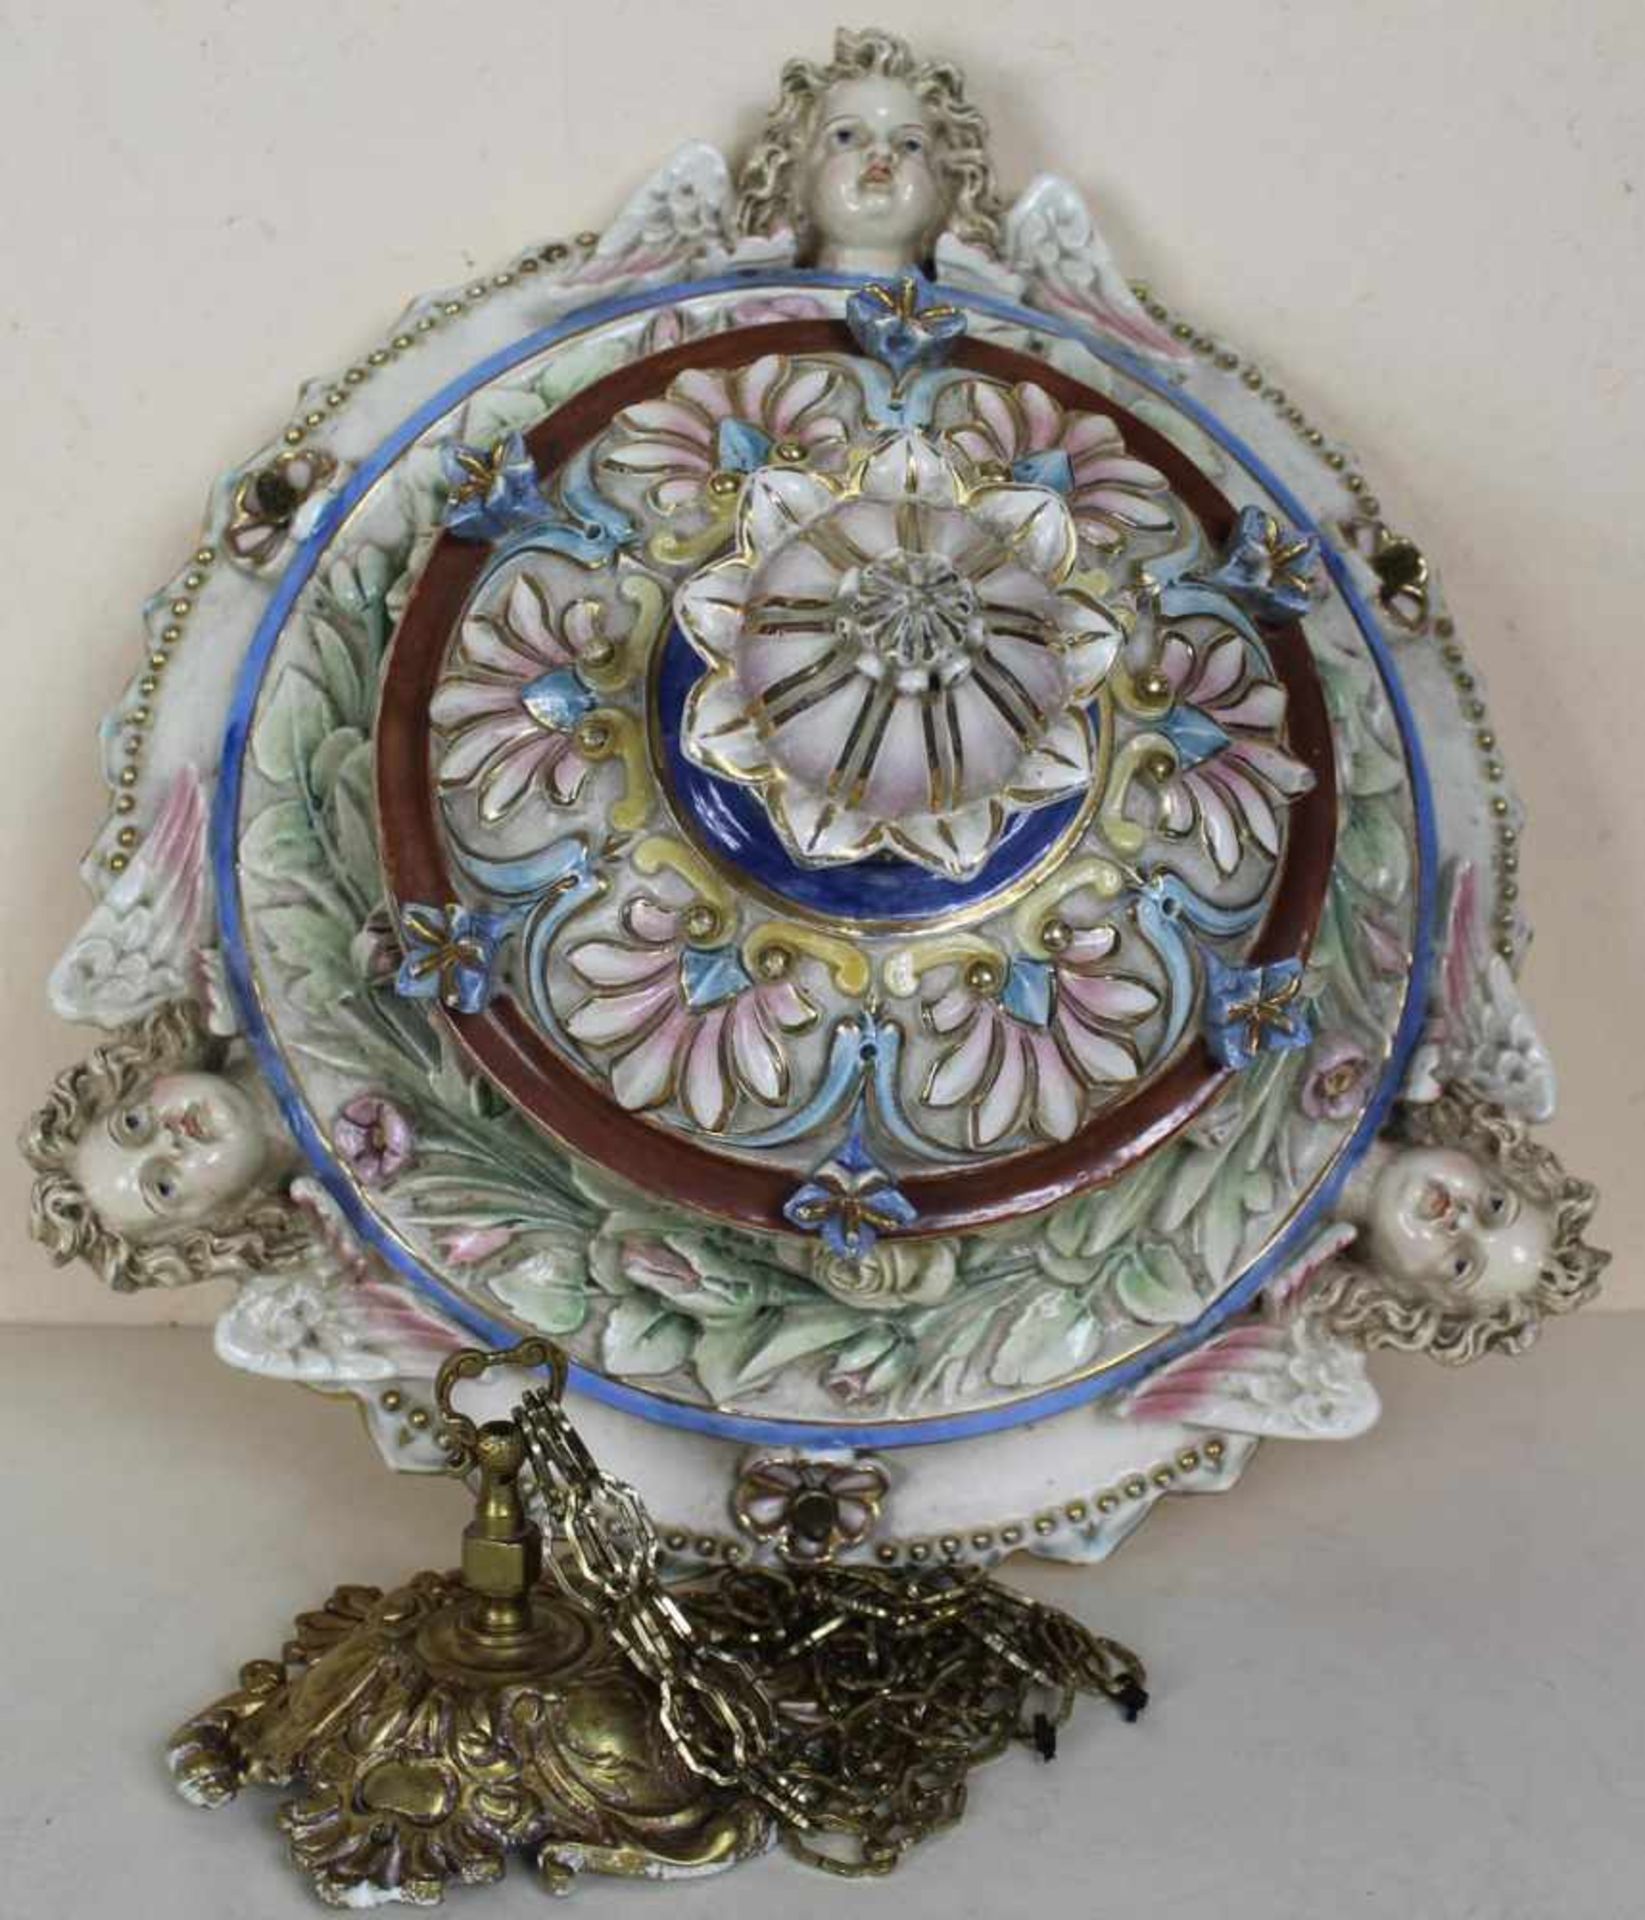 Blumenampel wohl Frankreich um 1900, Keramik mehrfarbig staffiert, Montur aus Messing mit